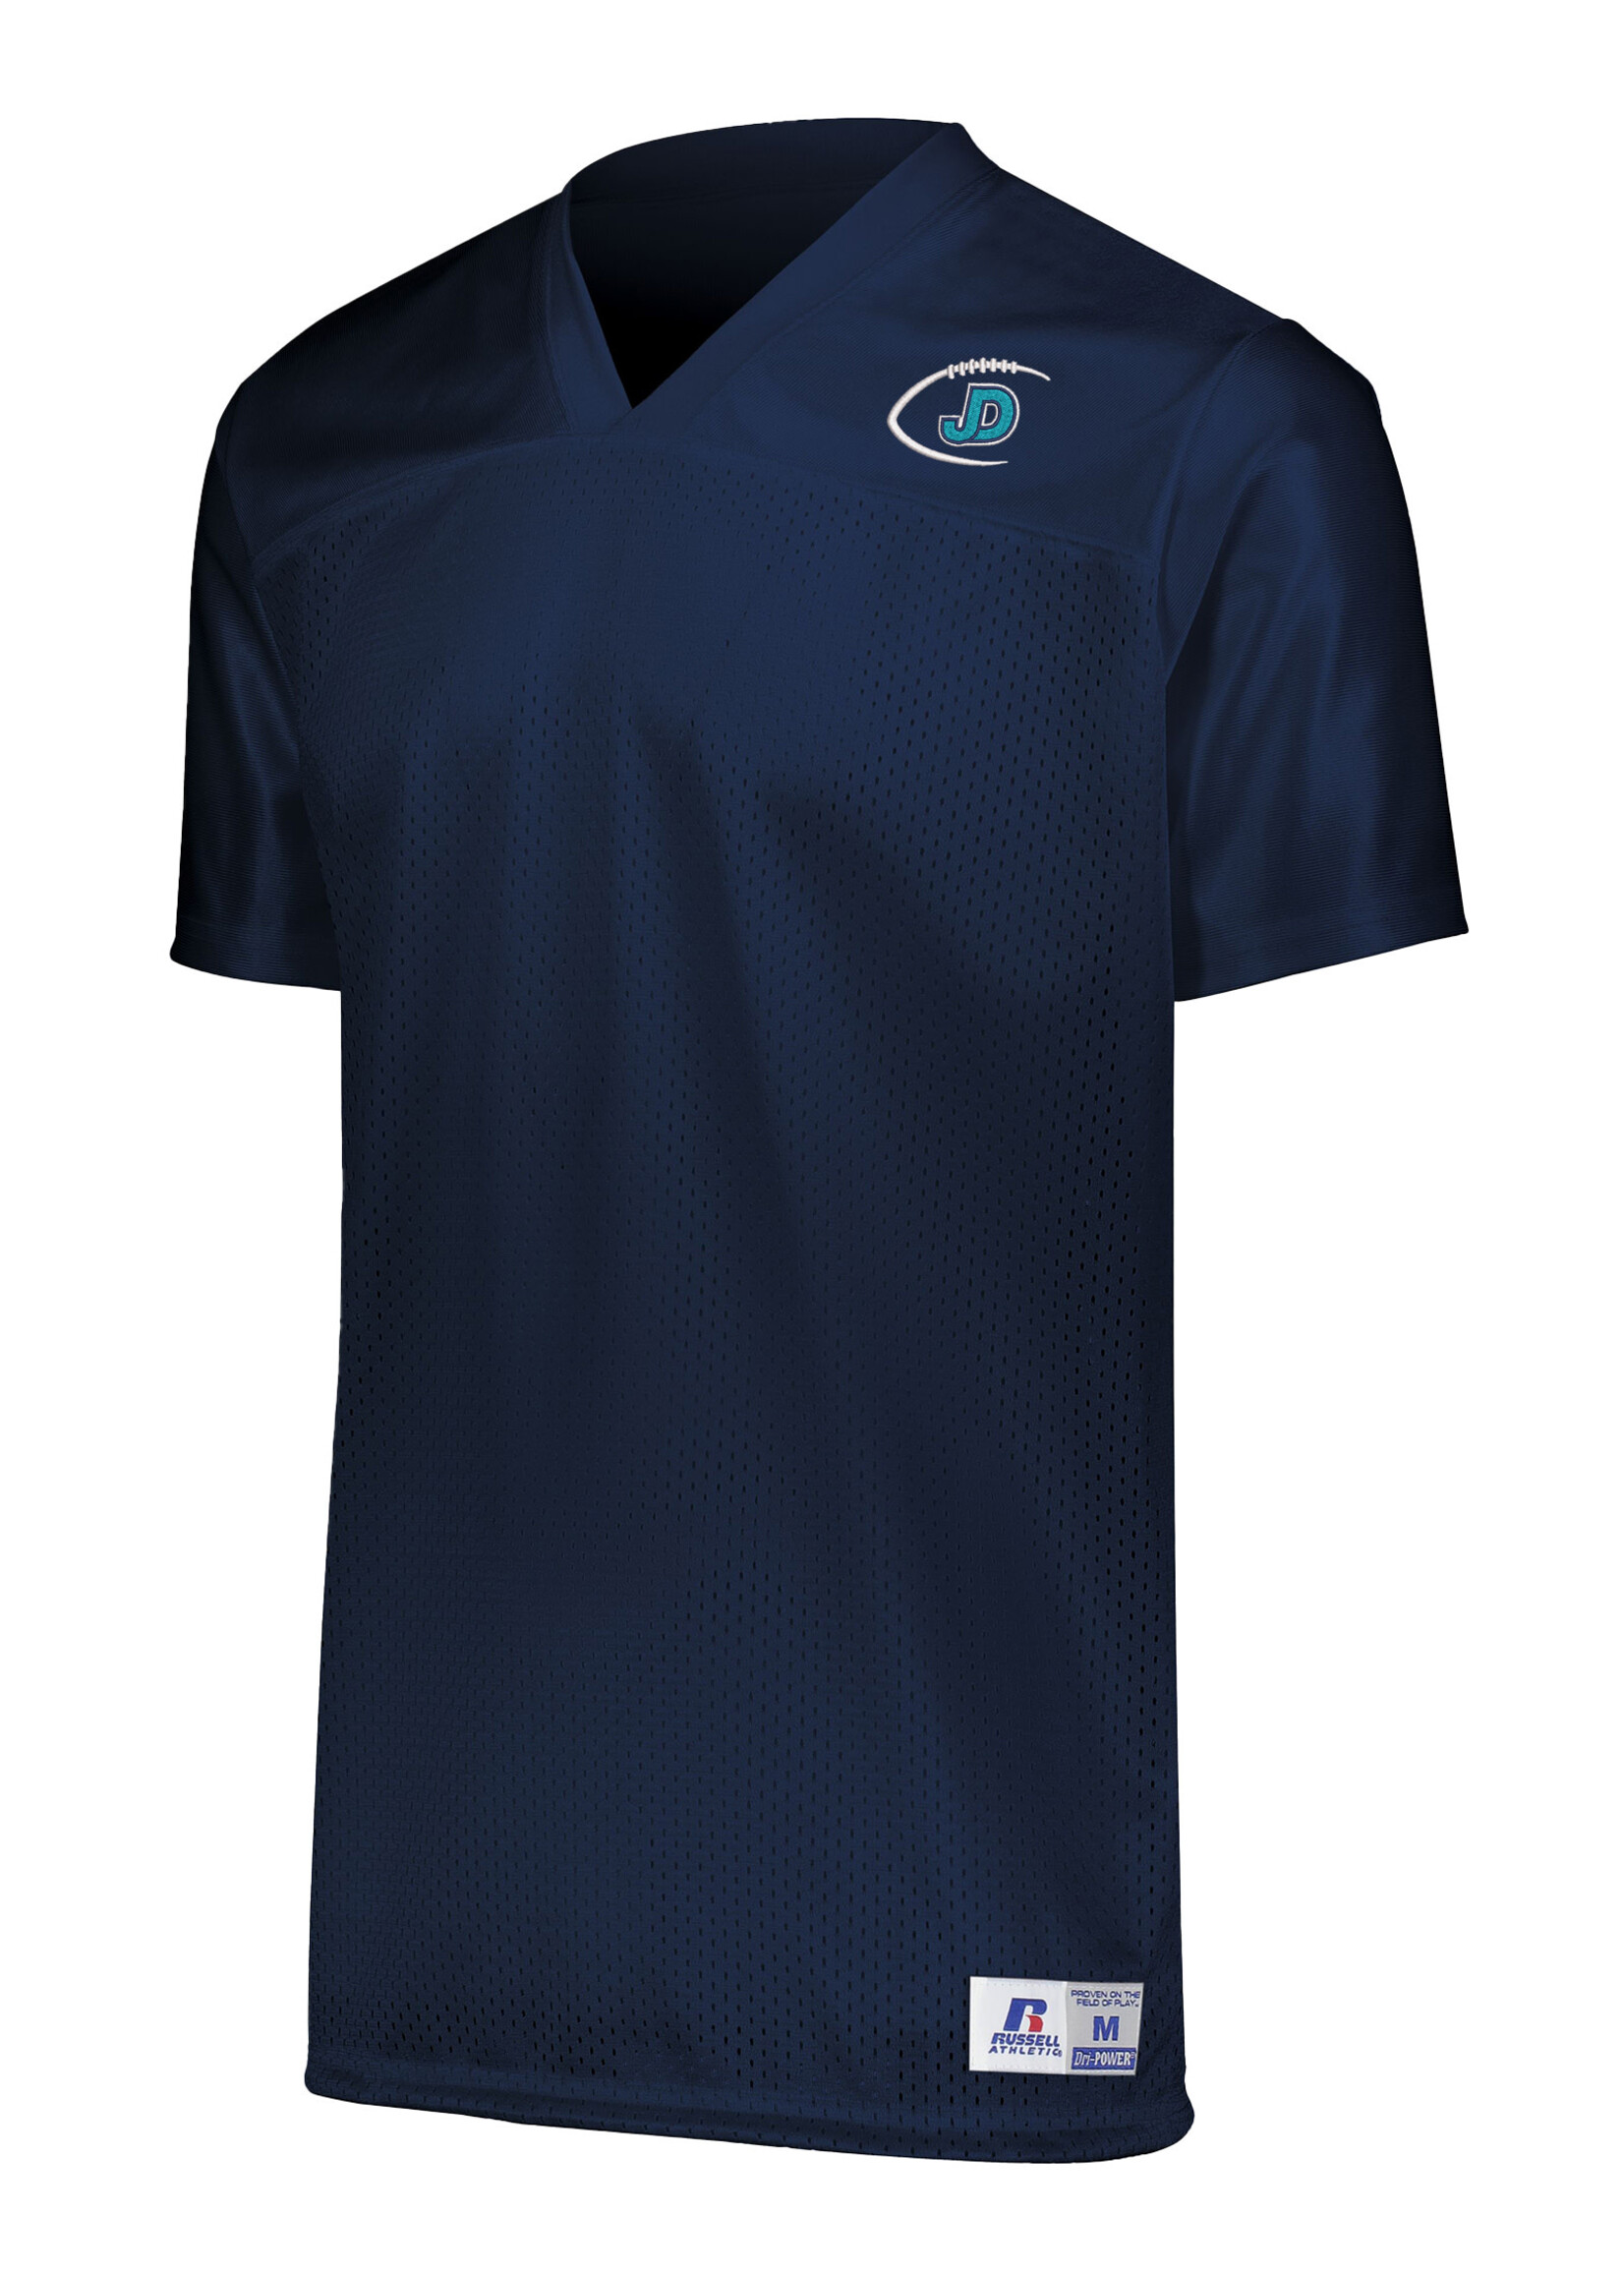 NON-UNIFORM JD Men's Short Sleeve Jersey, custom fan jersey